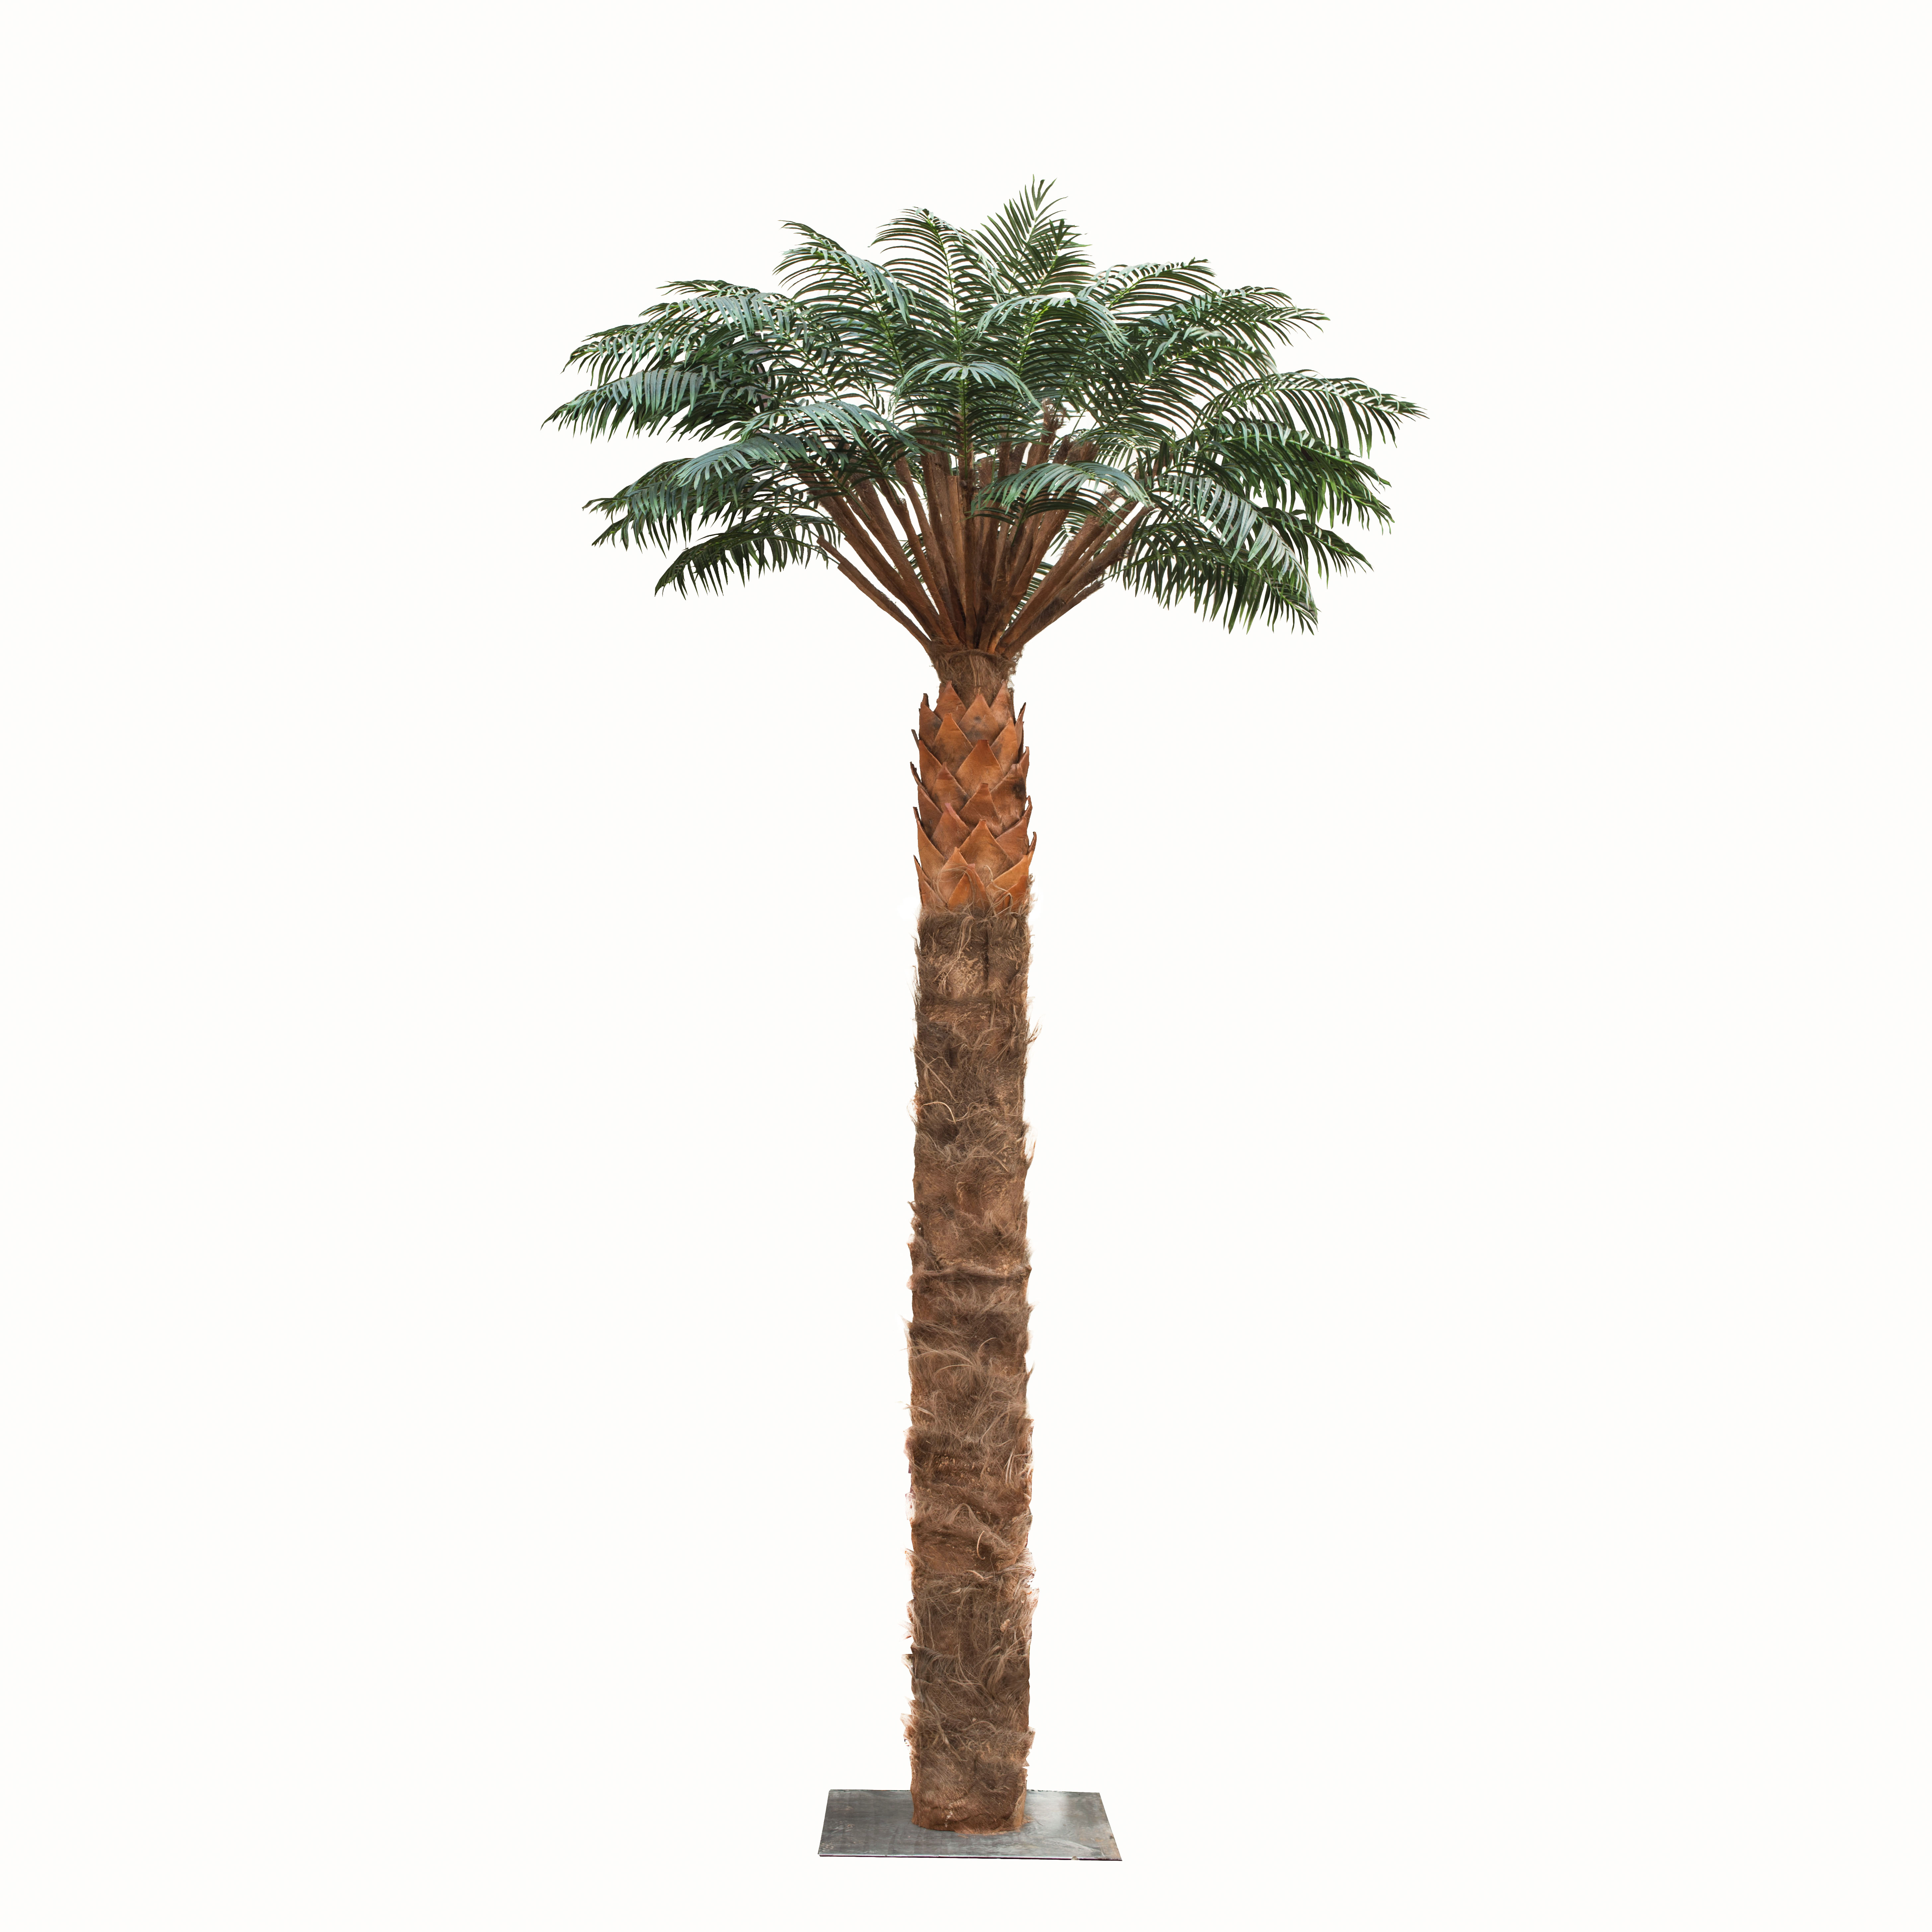 Progasi palma купить. Пальма Альсид. Treez пальмы. Пальма Арека катеху де Люкс. Пальма крупномер.